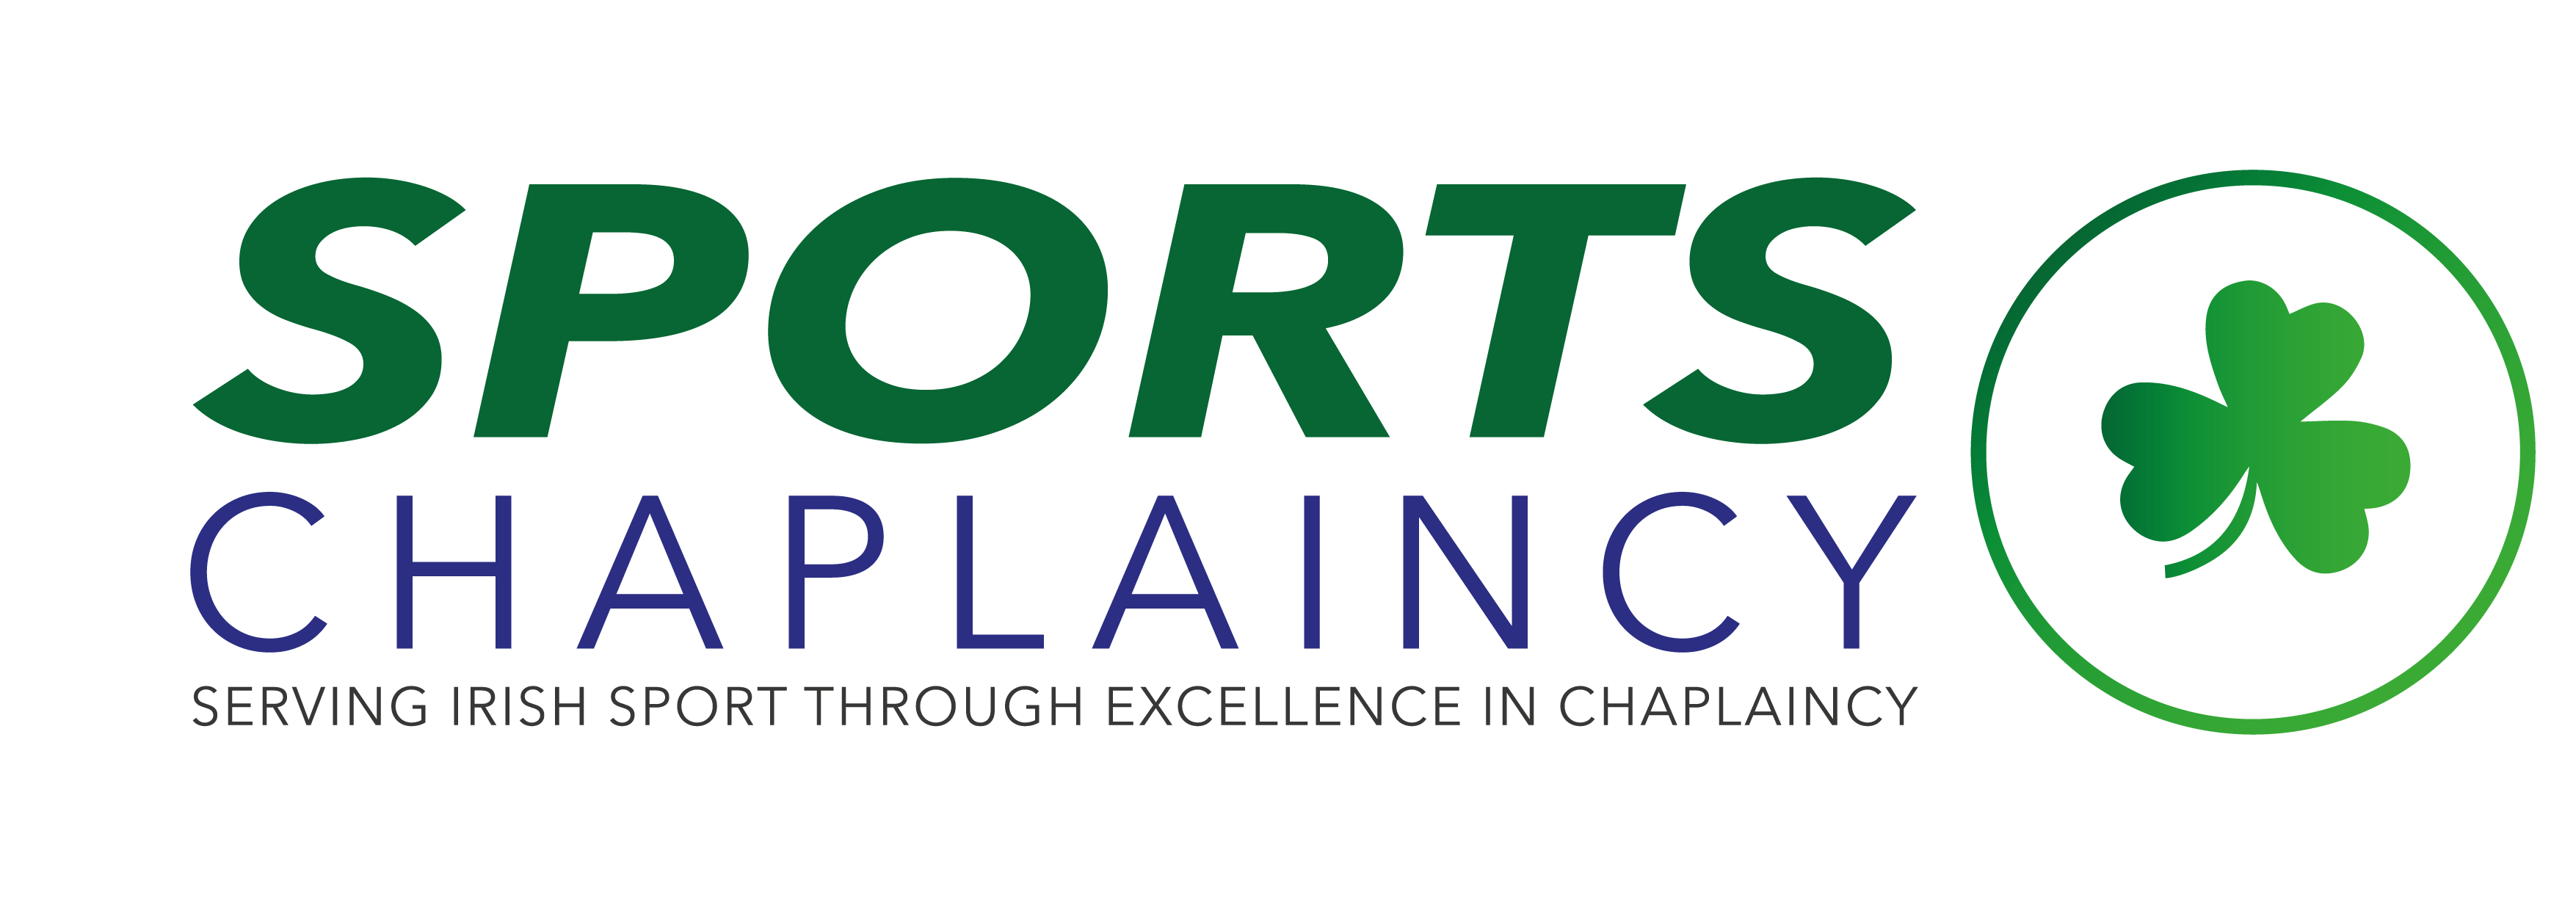 SportsChaplaincy-Ireland